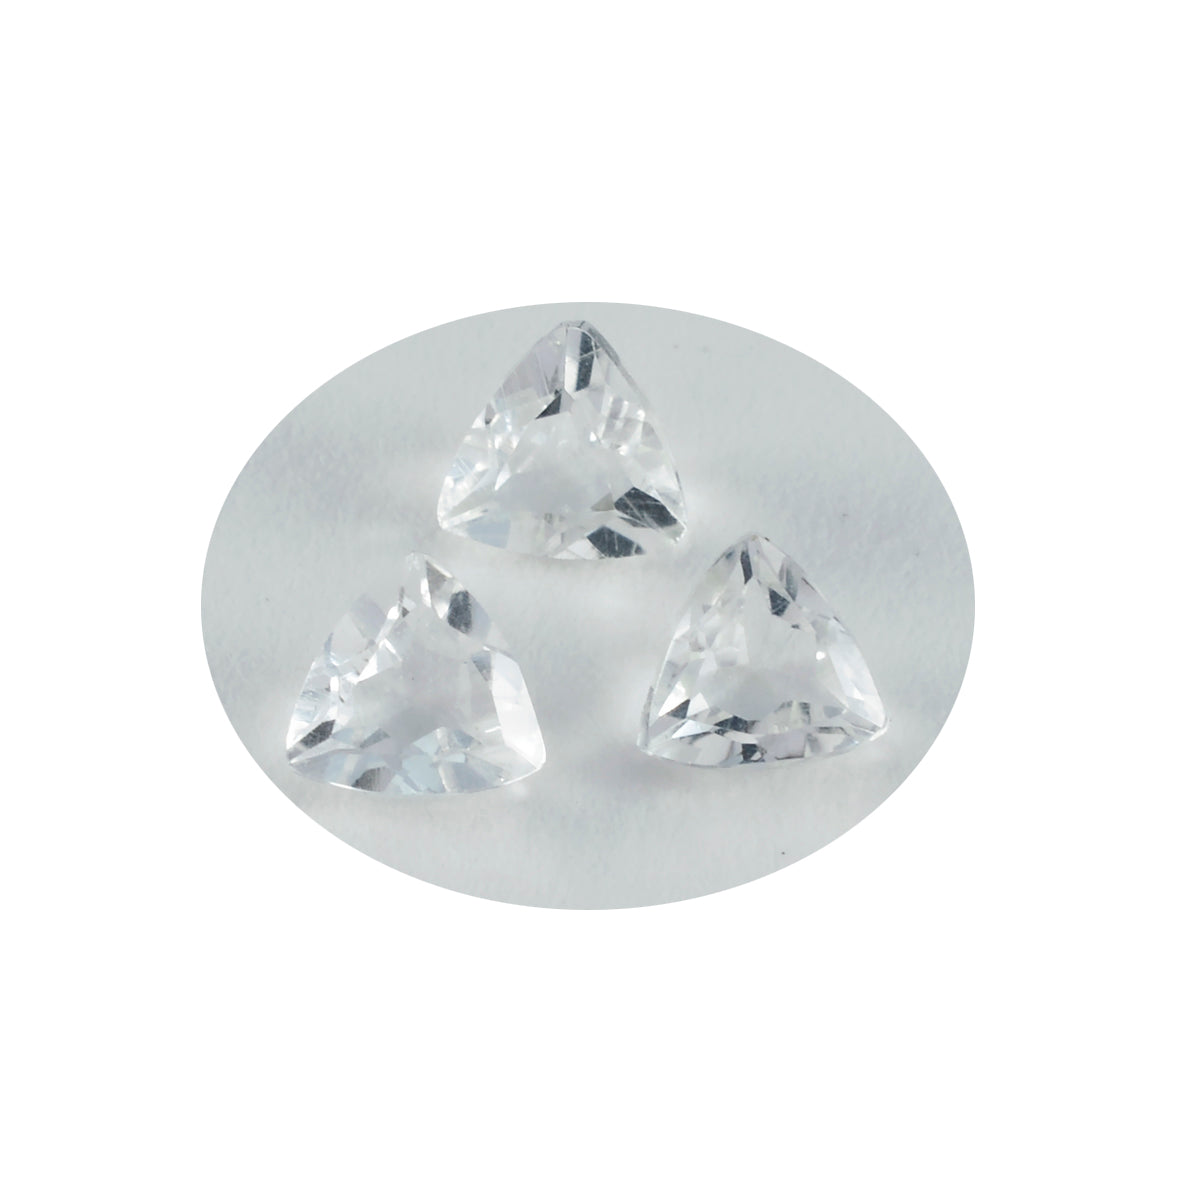 riyogems 1 шт., белый кристалл кварца, ограненный, 10x10 мм, форма триллиона, удивительное качество, свободный камень